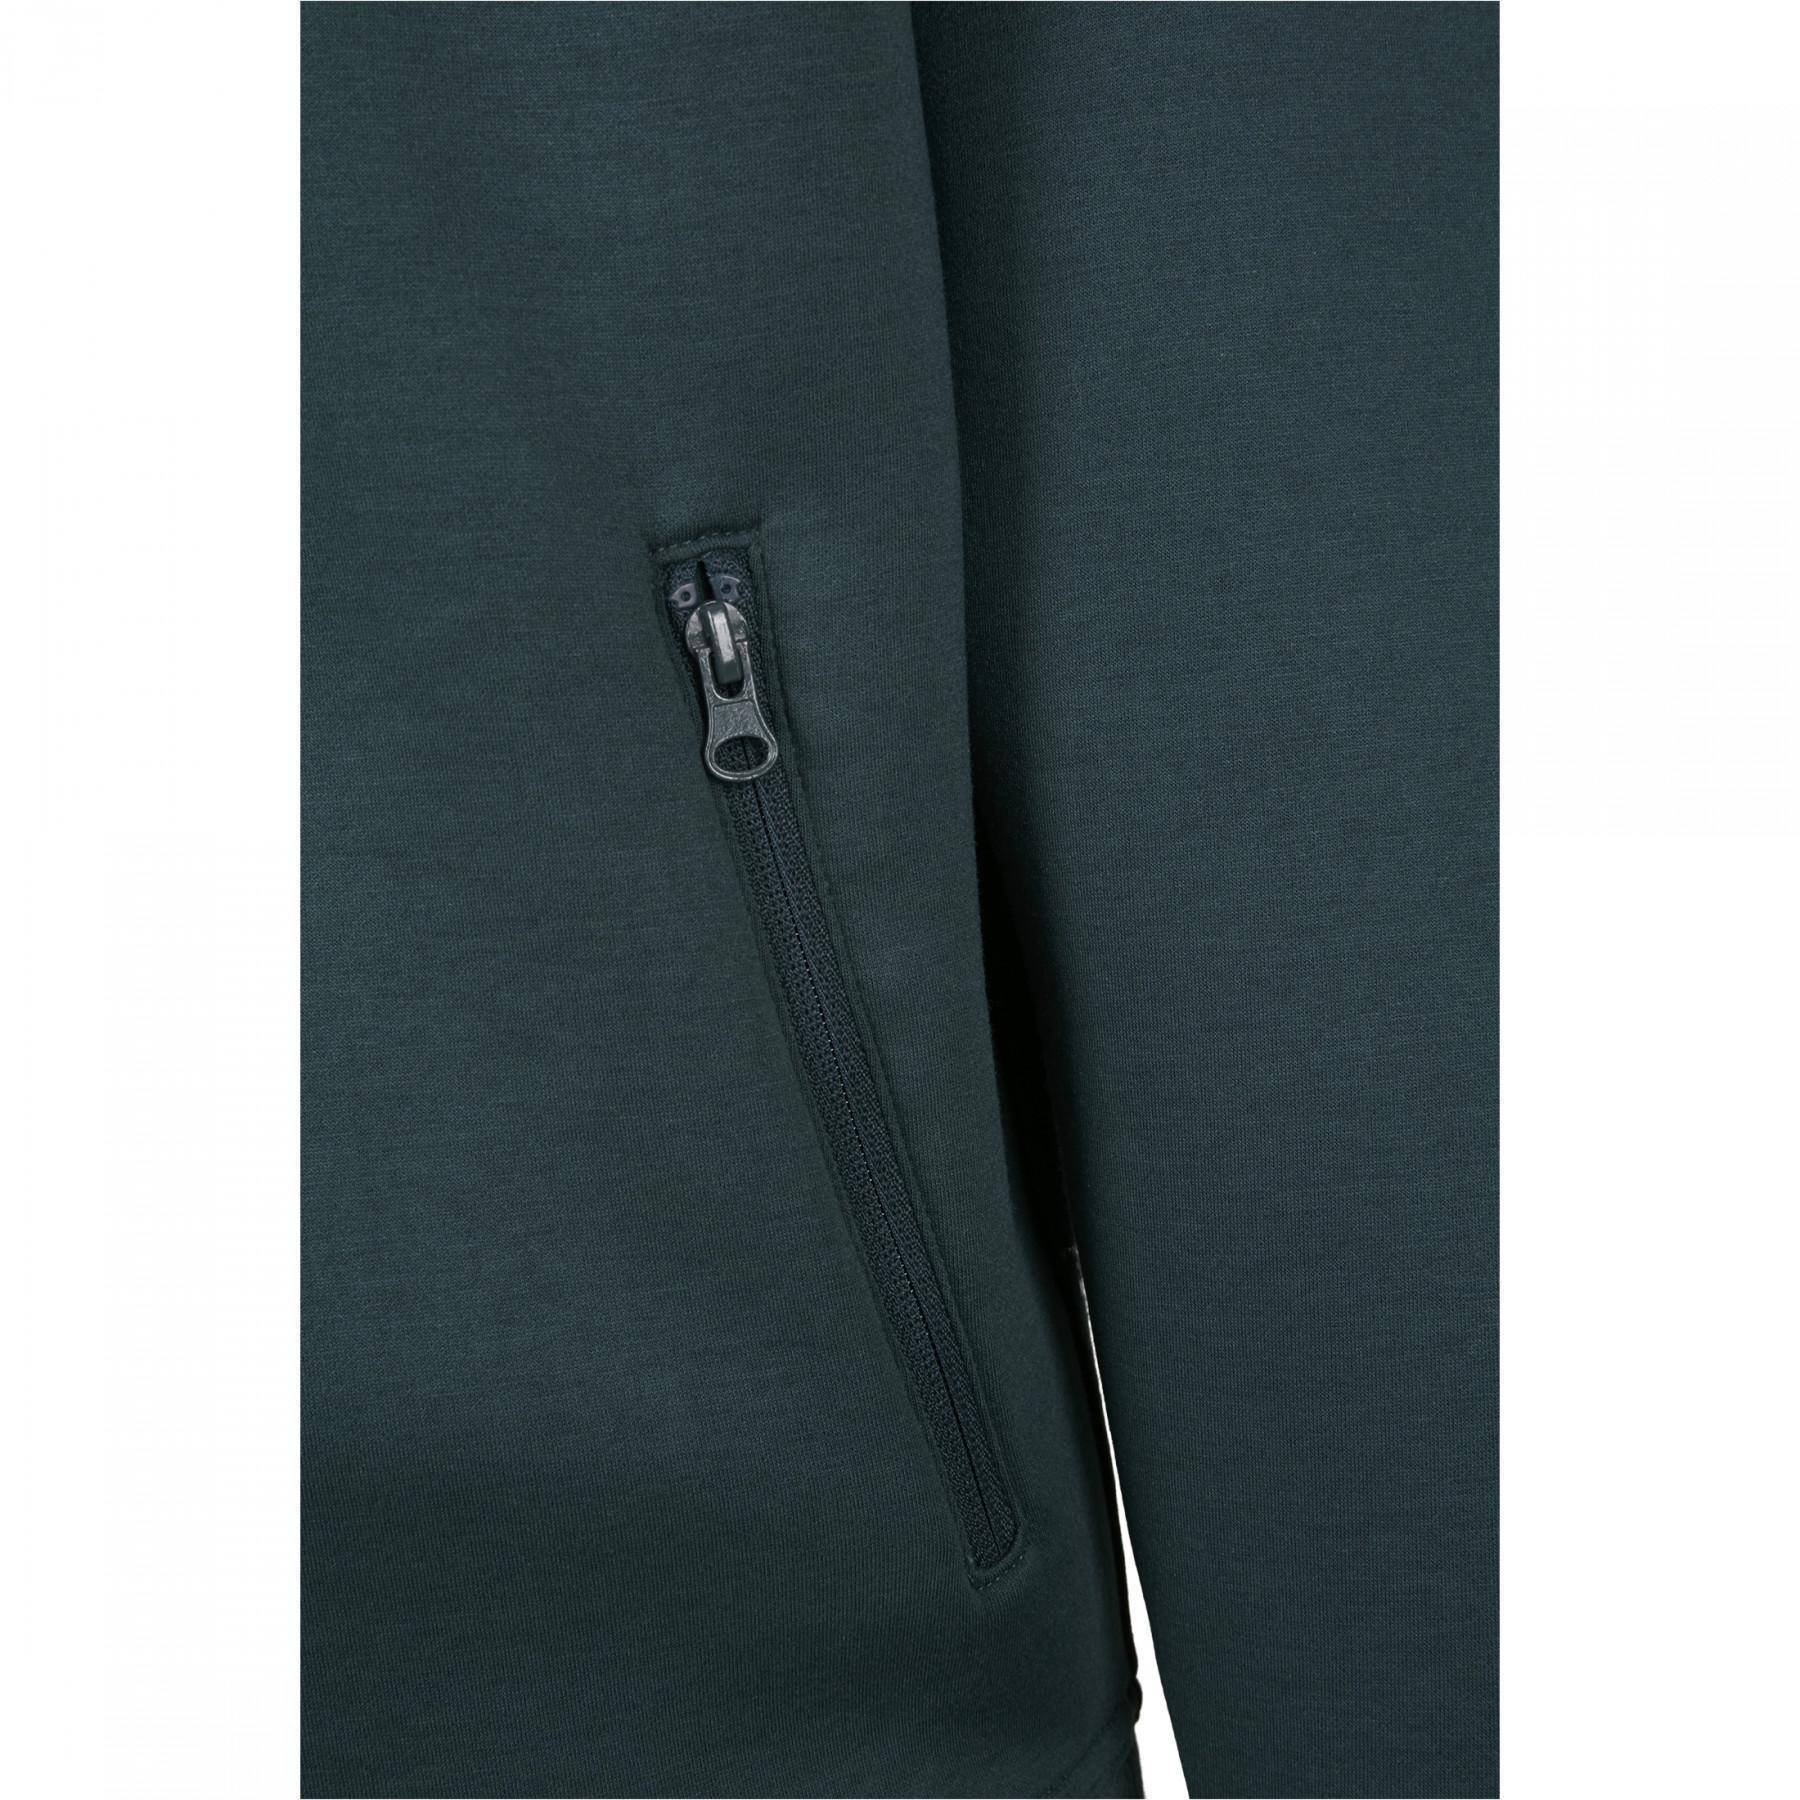 Camisola com capuz urban Classic raglan zip pocket